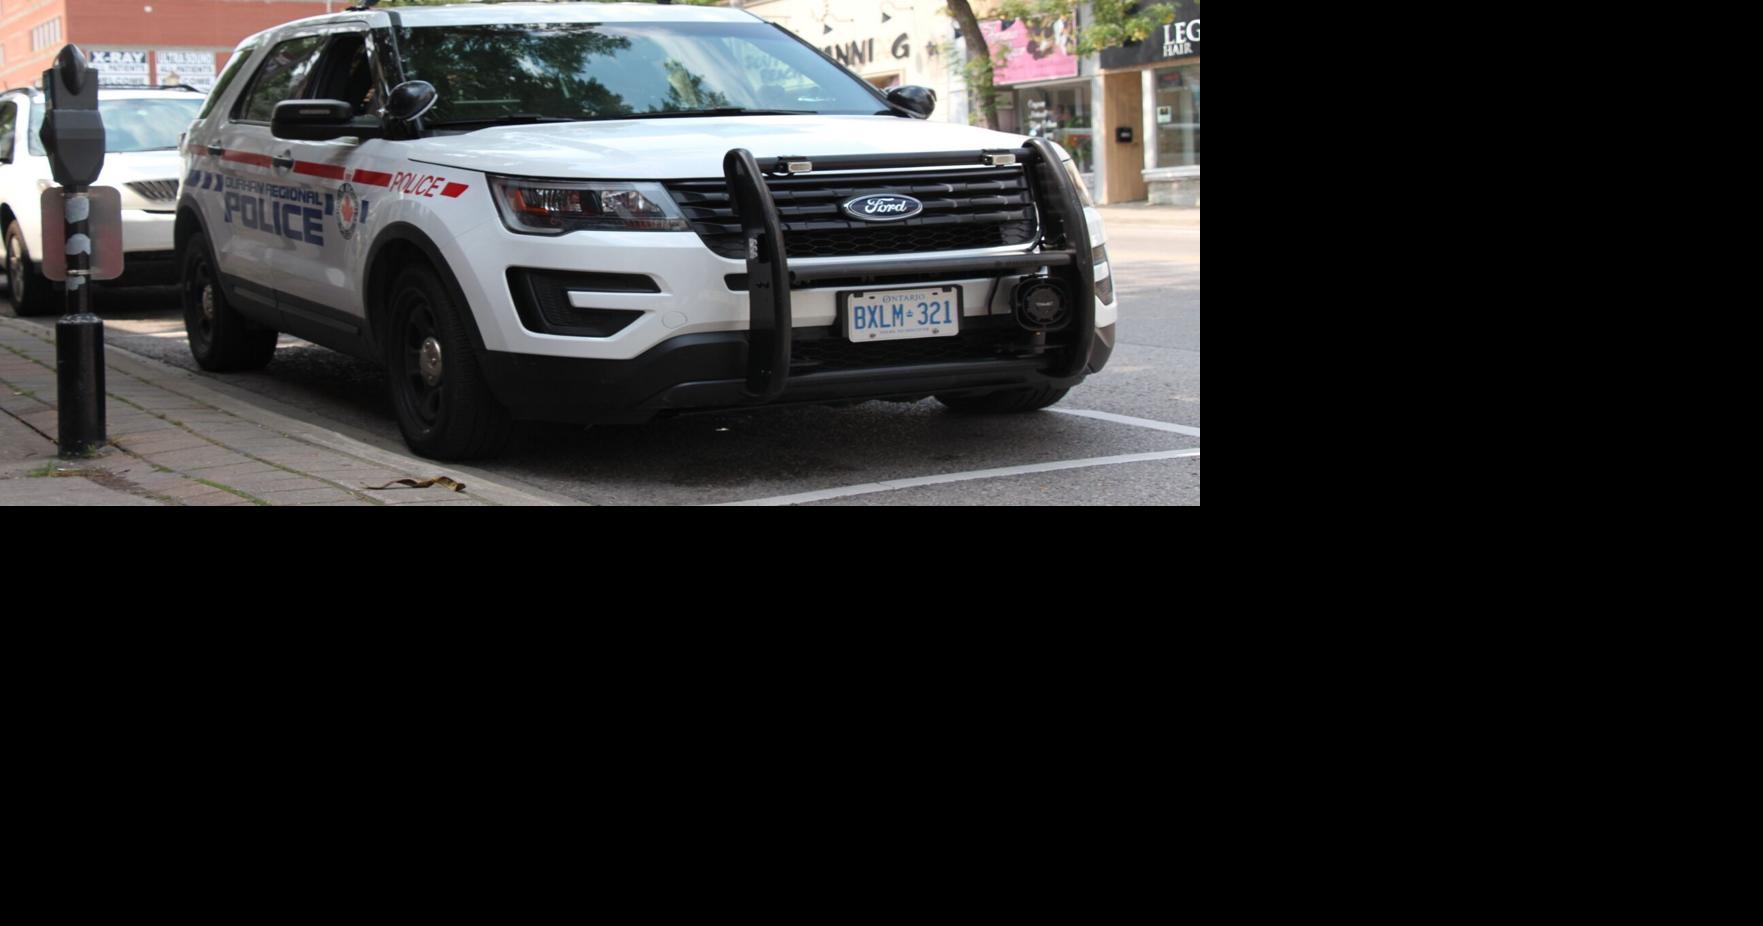 3名魁北克男子涉嫌盗窃皮克林SUV，现已被起诉